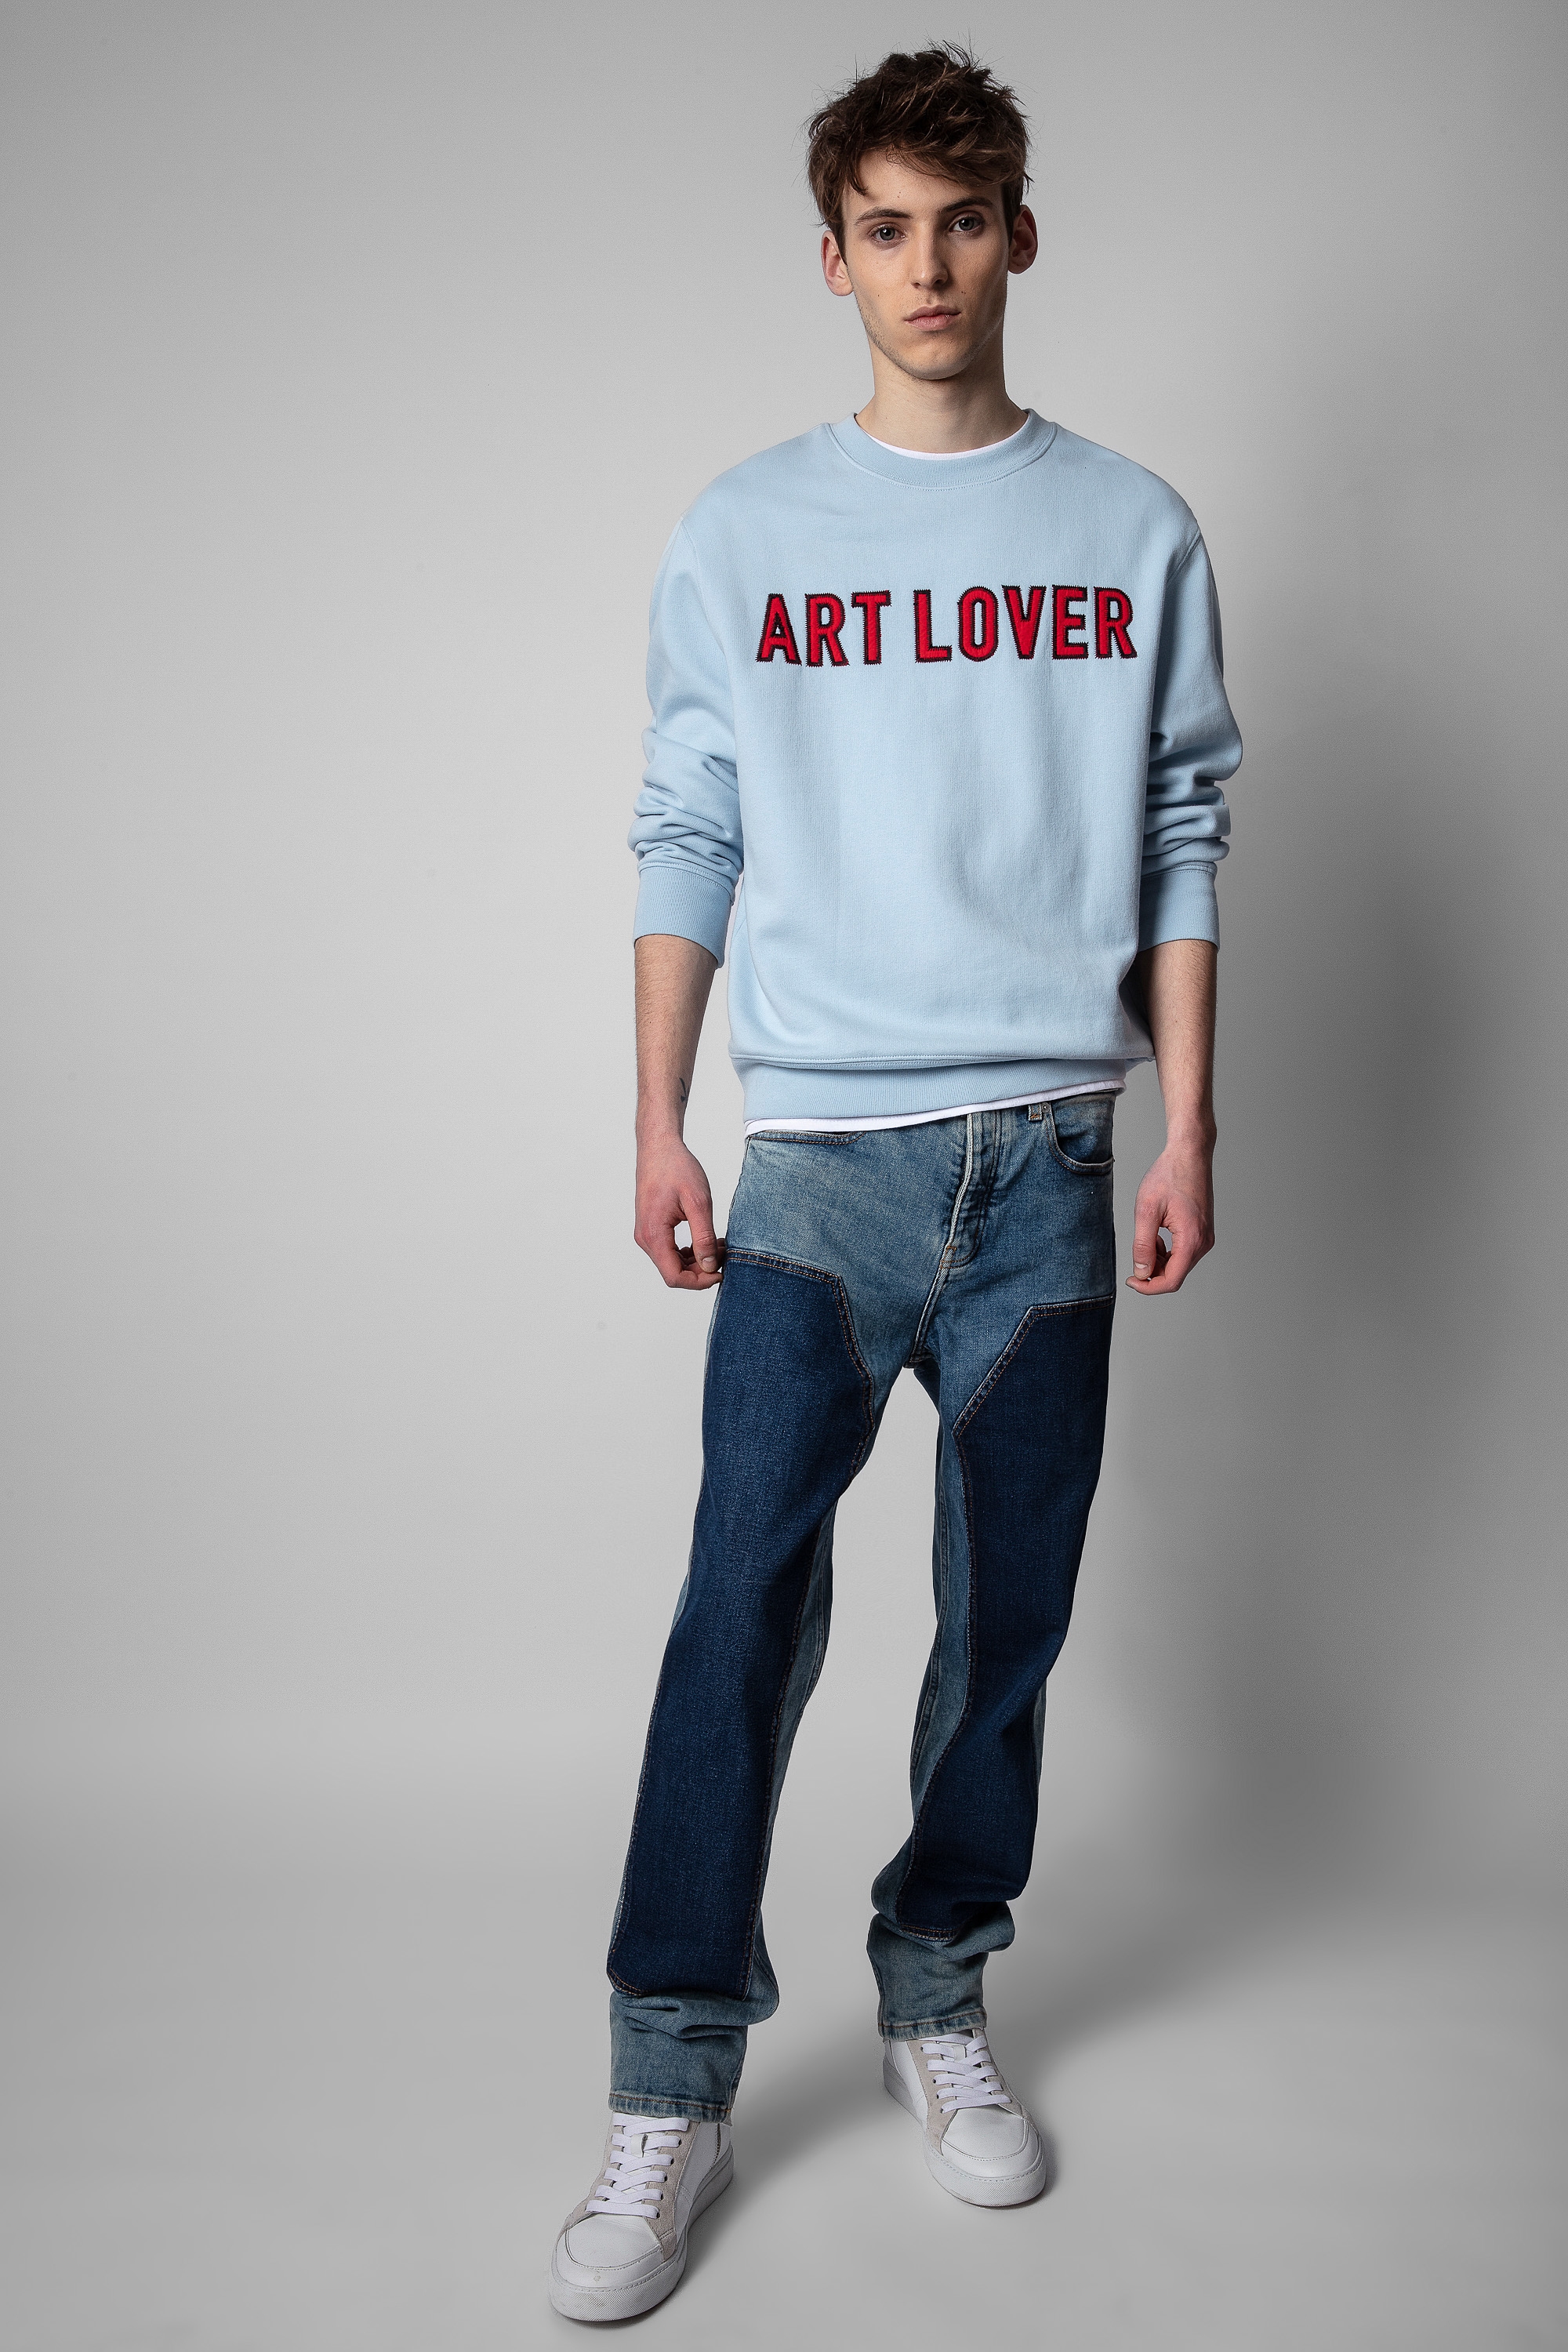 [추석특가] Simba Art Lover Sweatshirt